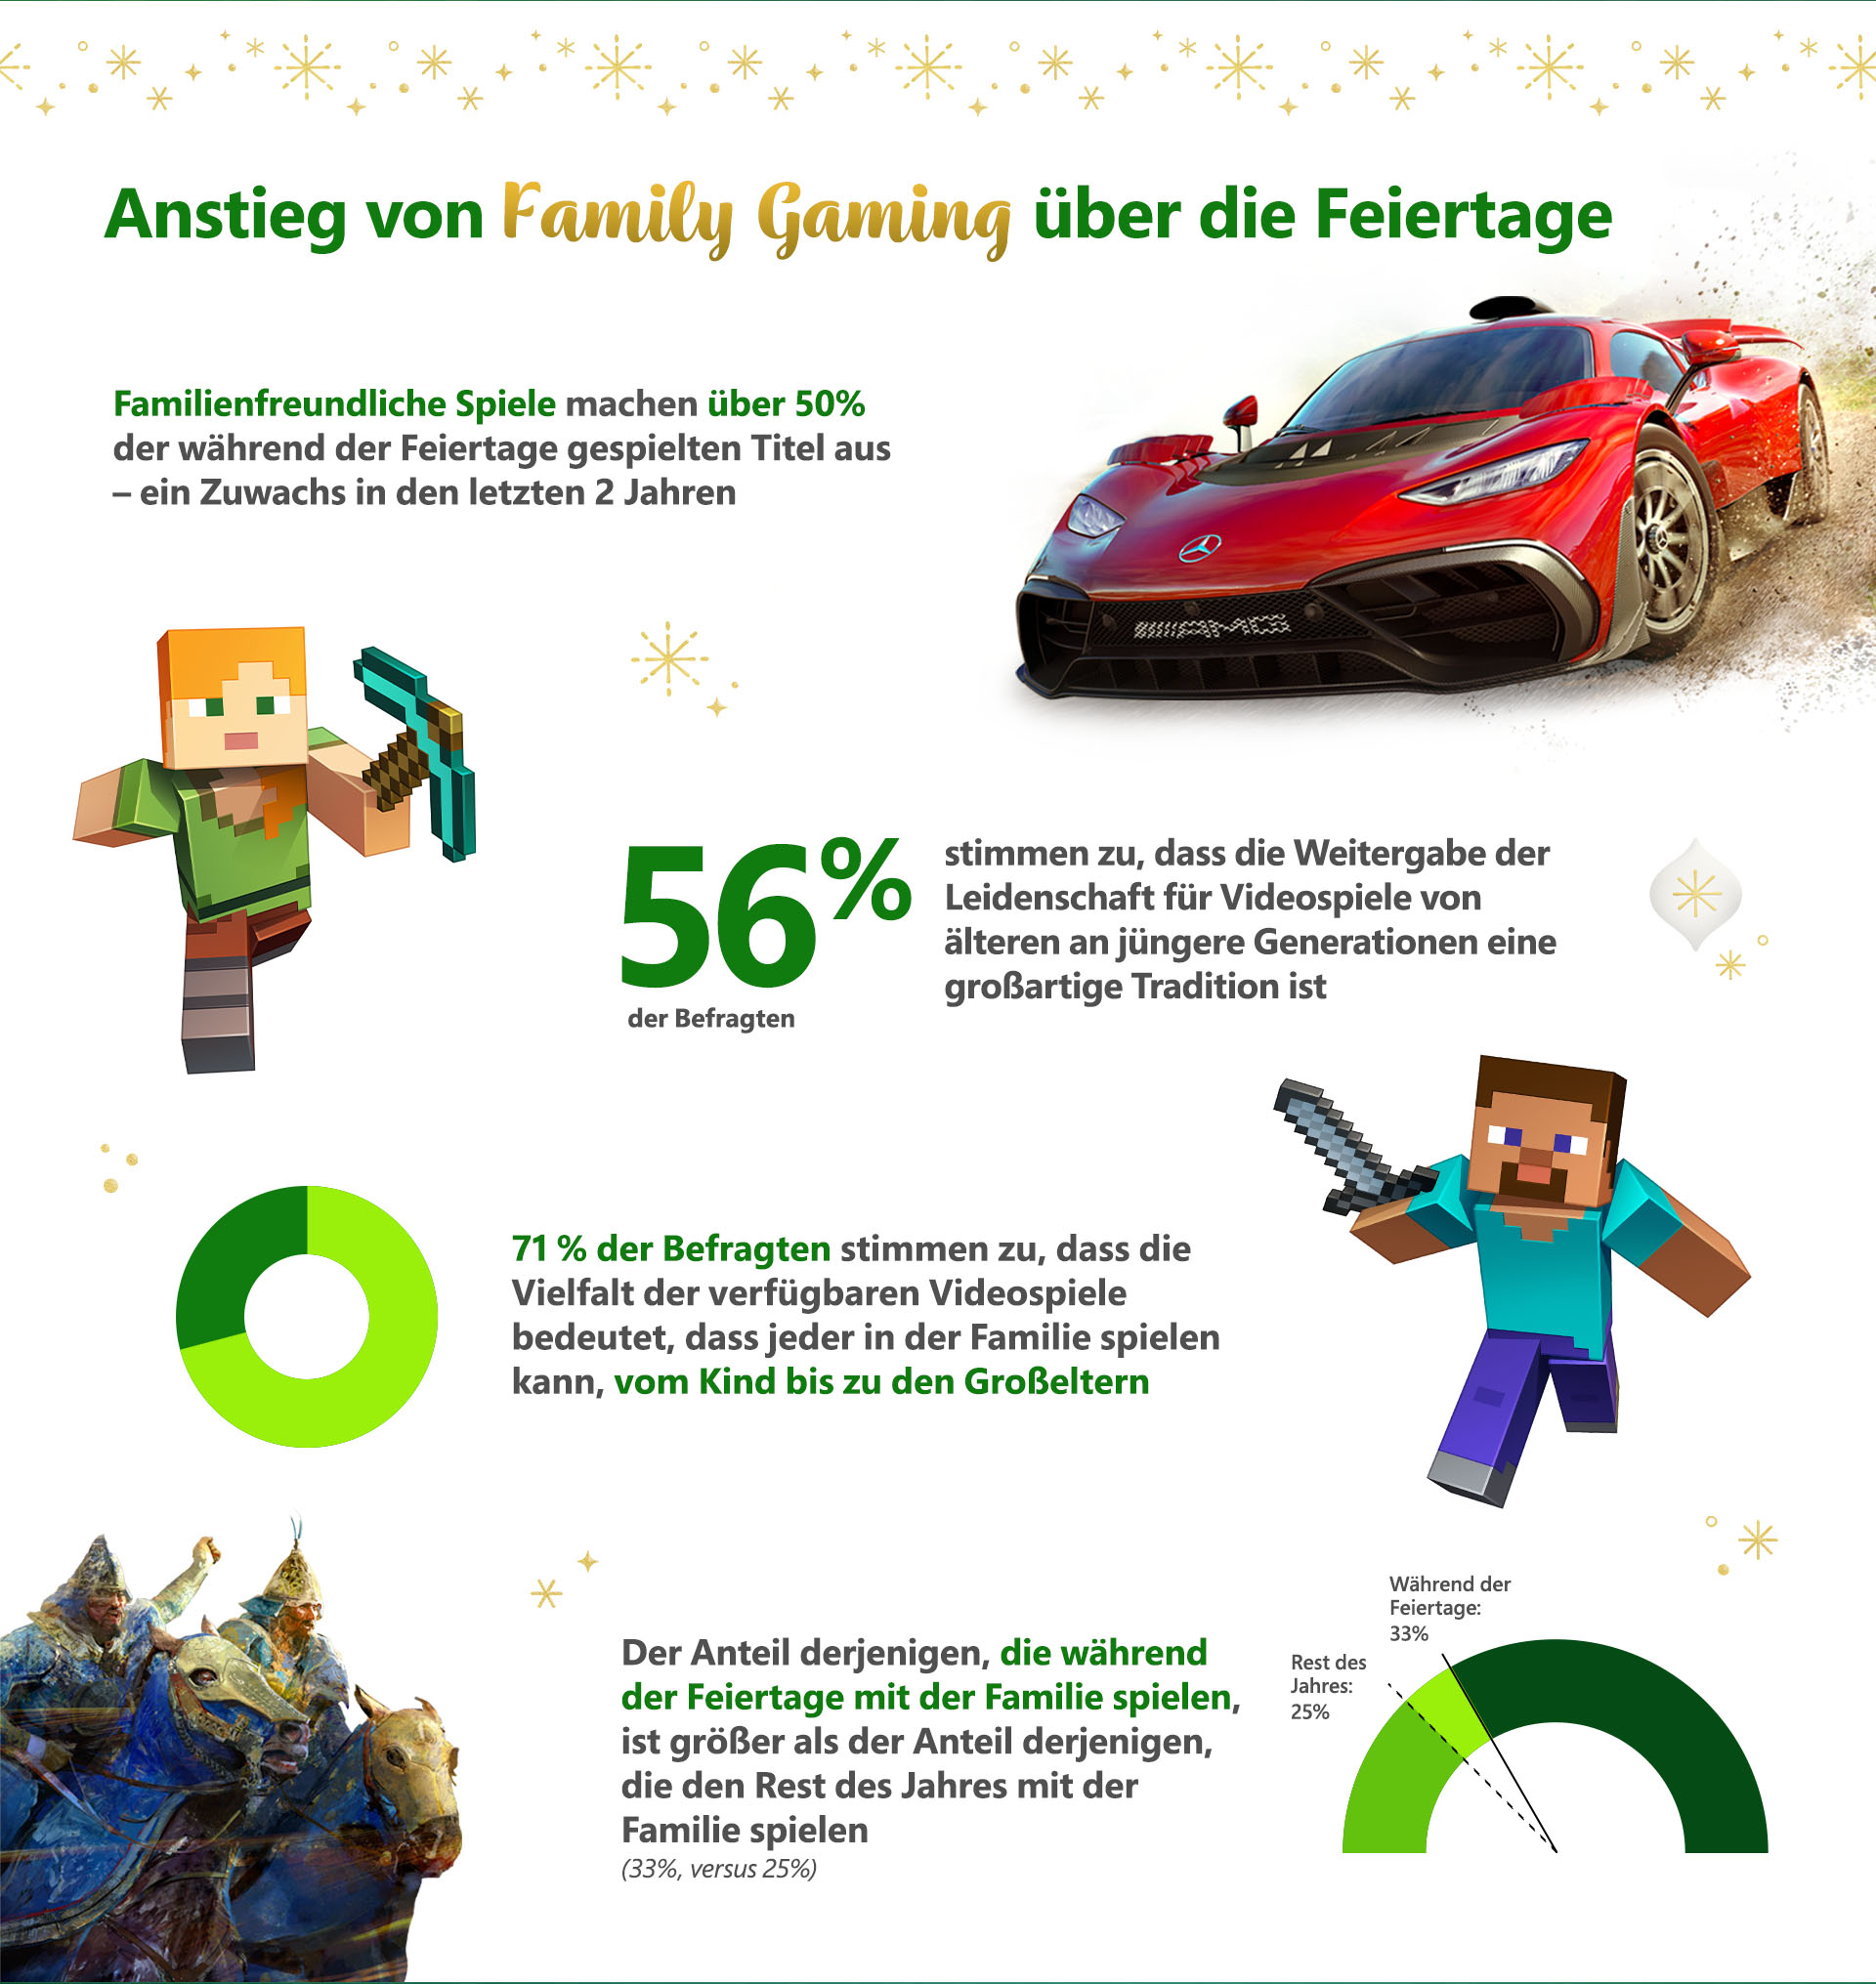 Globale Xbox-Umfrage zeigt: Familien planen, an den Feiertagen gemeinsam zu spielen